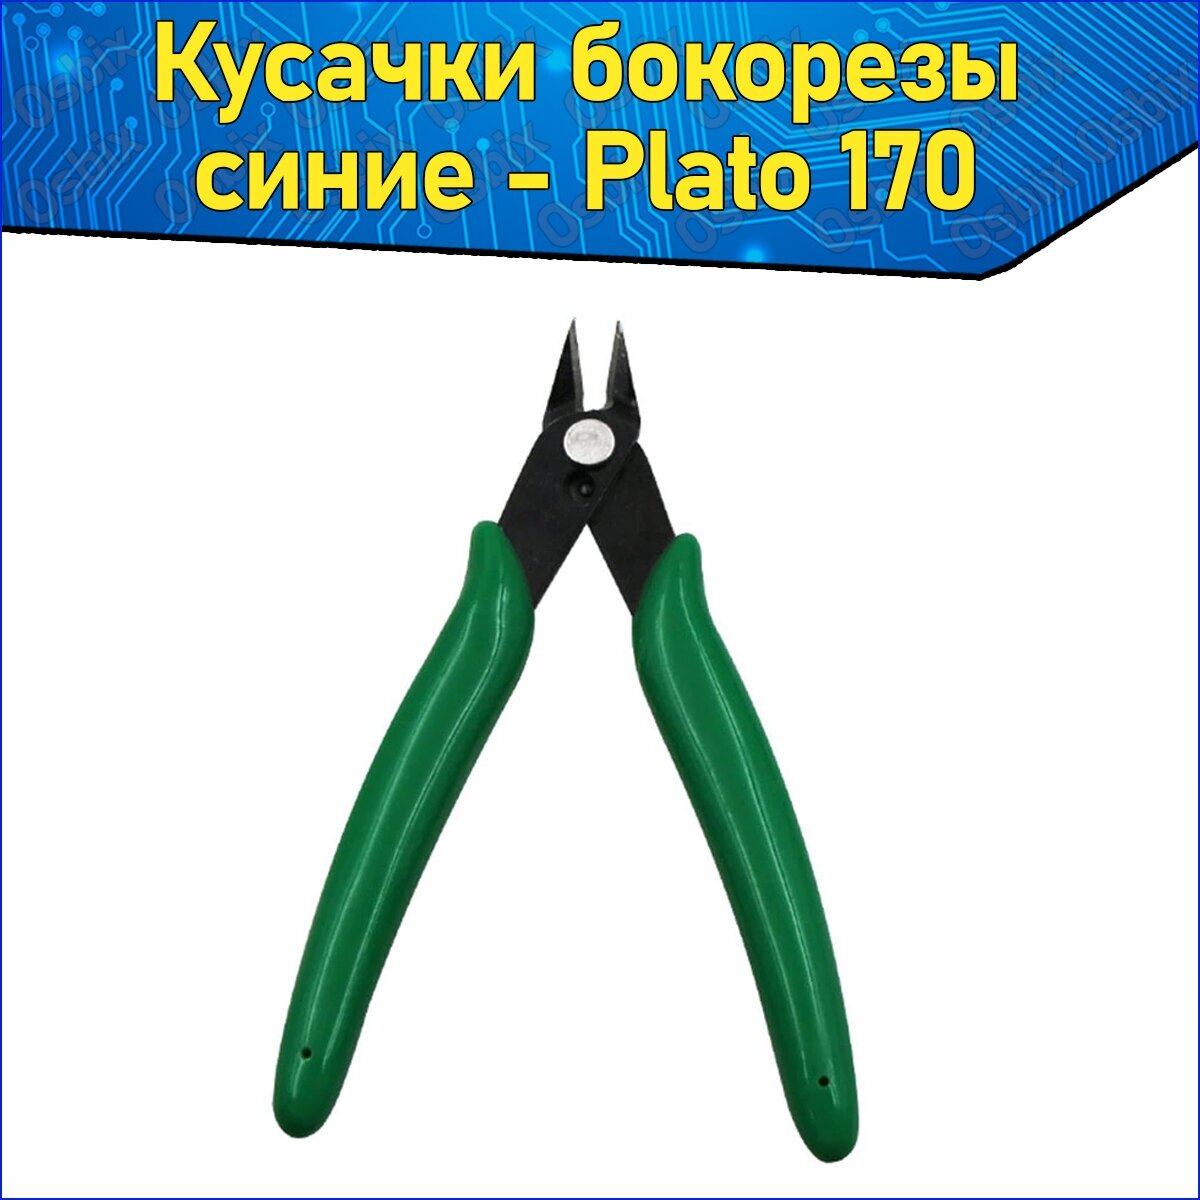 Кусачки бокорезы Plato 170 для проволоки до 1 мм Зеленые